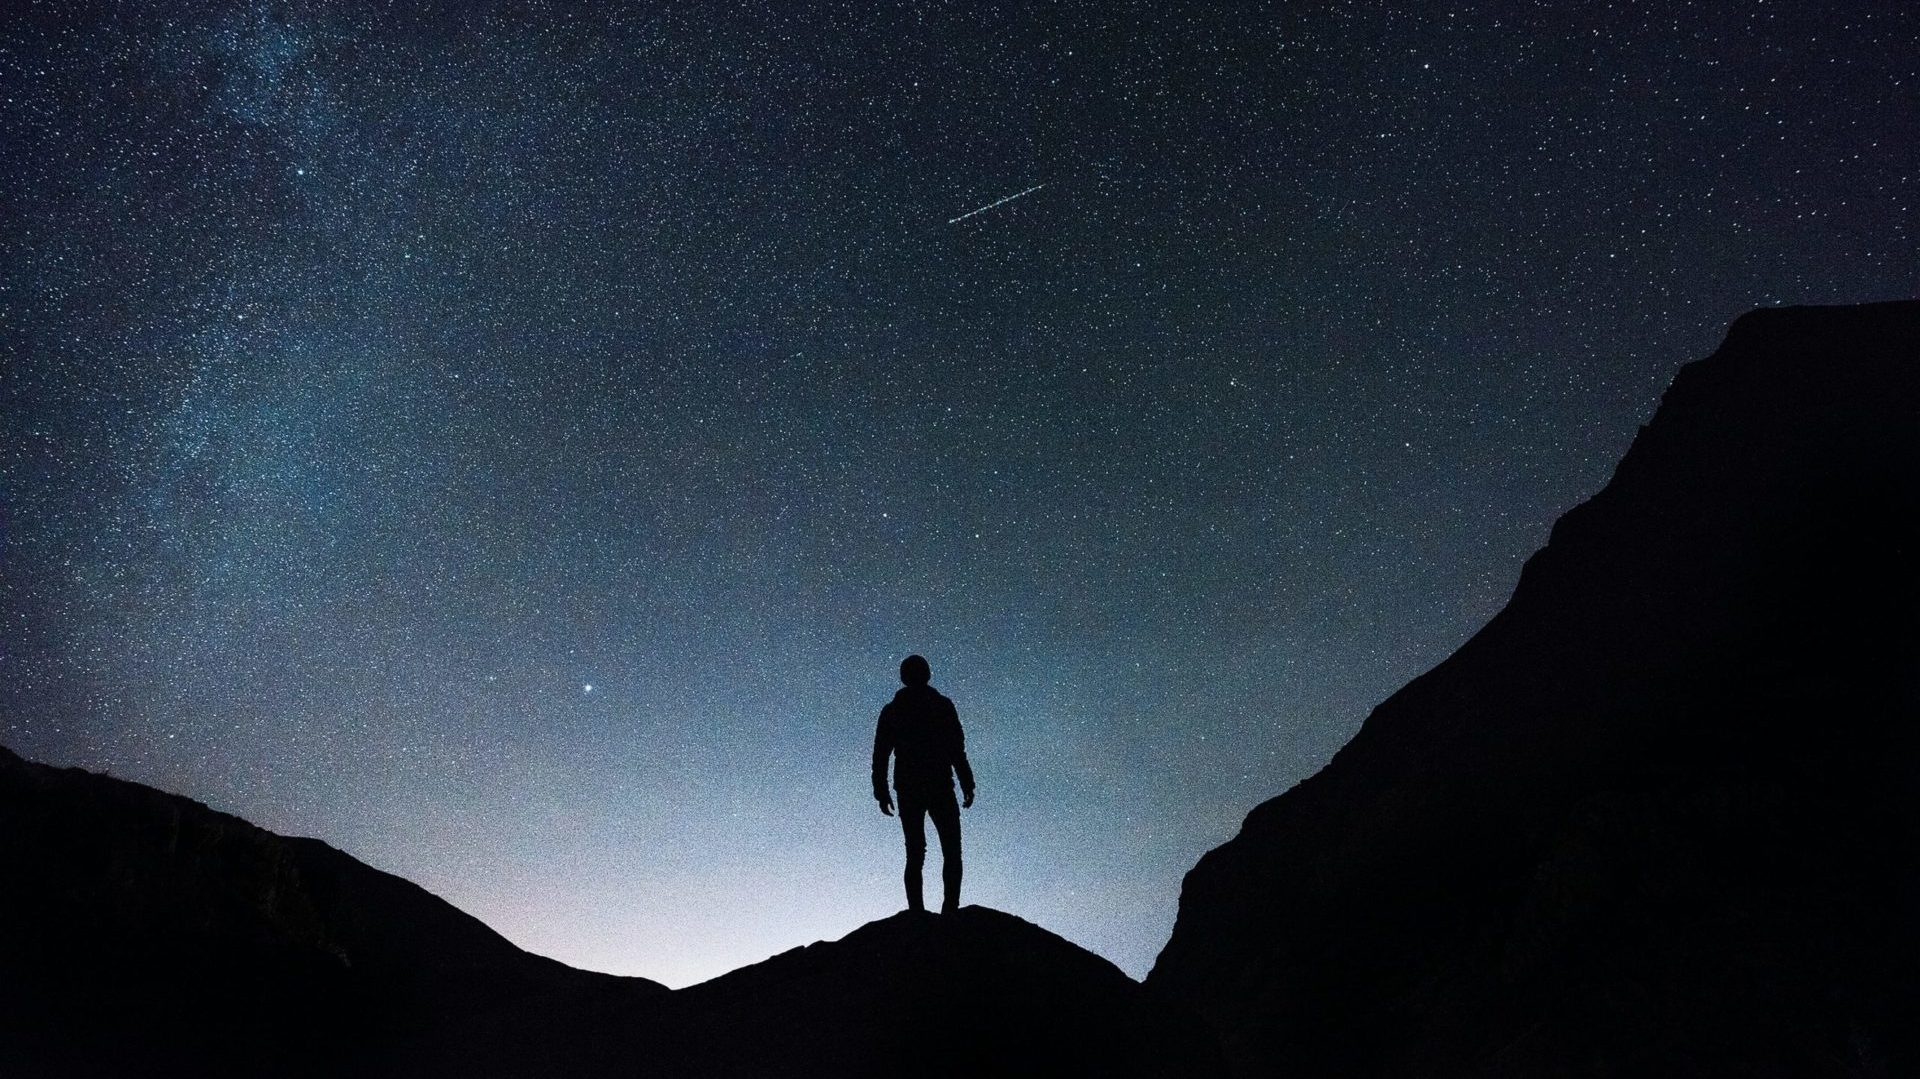 Uomo sul picco di un monte, guarda il cielo stellato con una cometa.